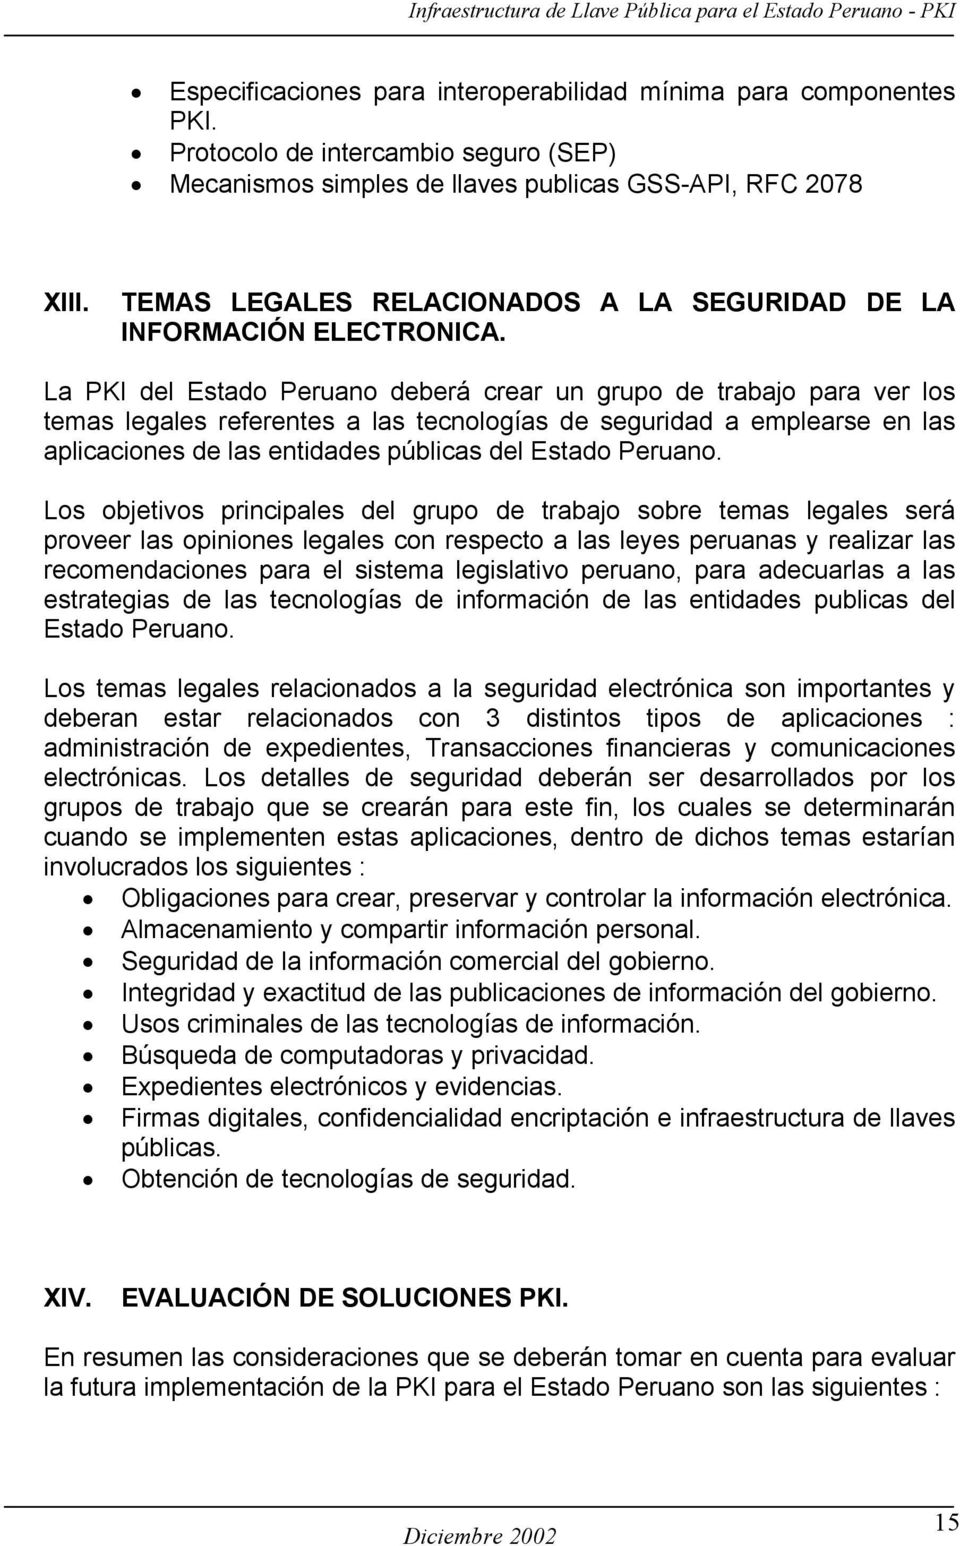 La PKI del Estado Peruano deberá crear un grupo de trabajo para ver los temas legales referentes a las tecnologías de seguridad a emplearse en las aplicaciones de las entidades públicas del Estado